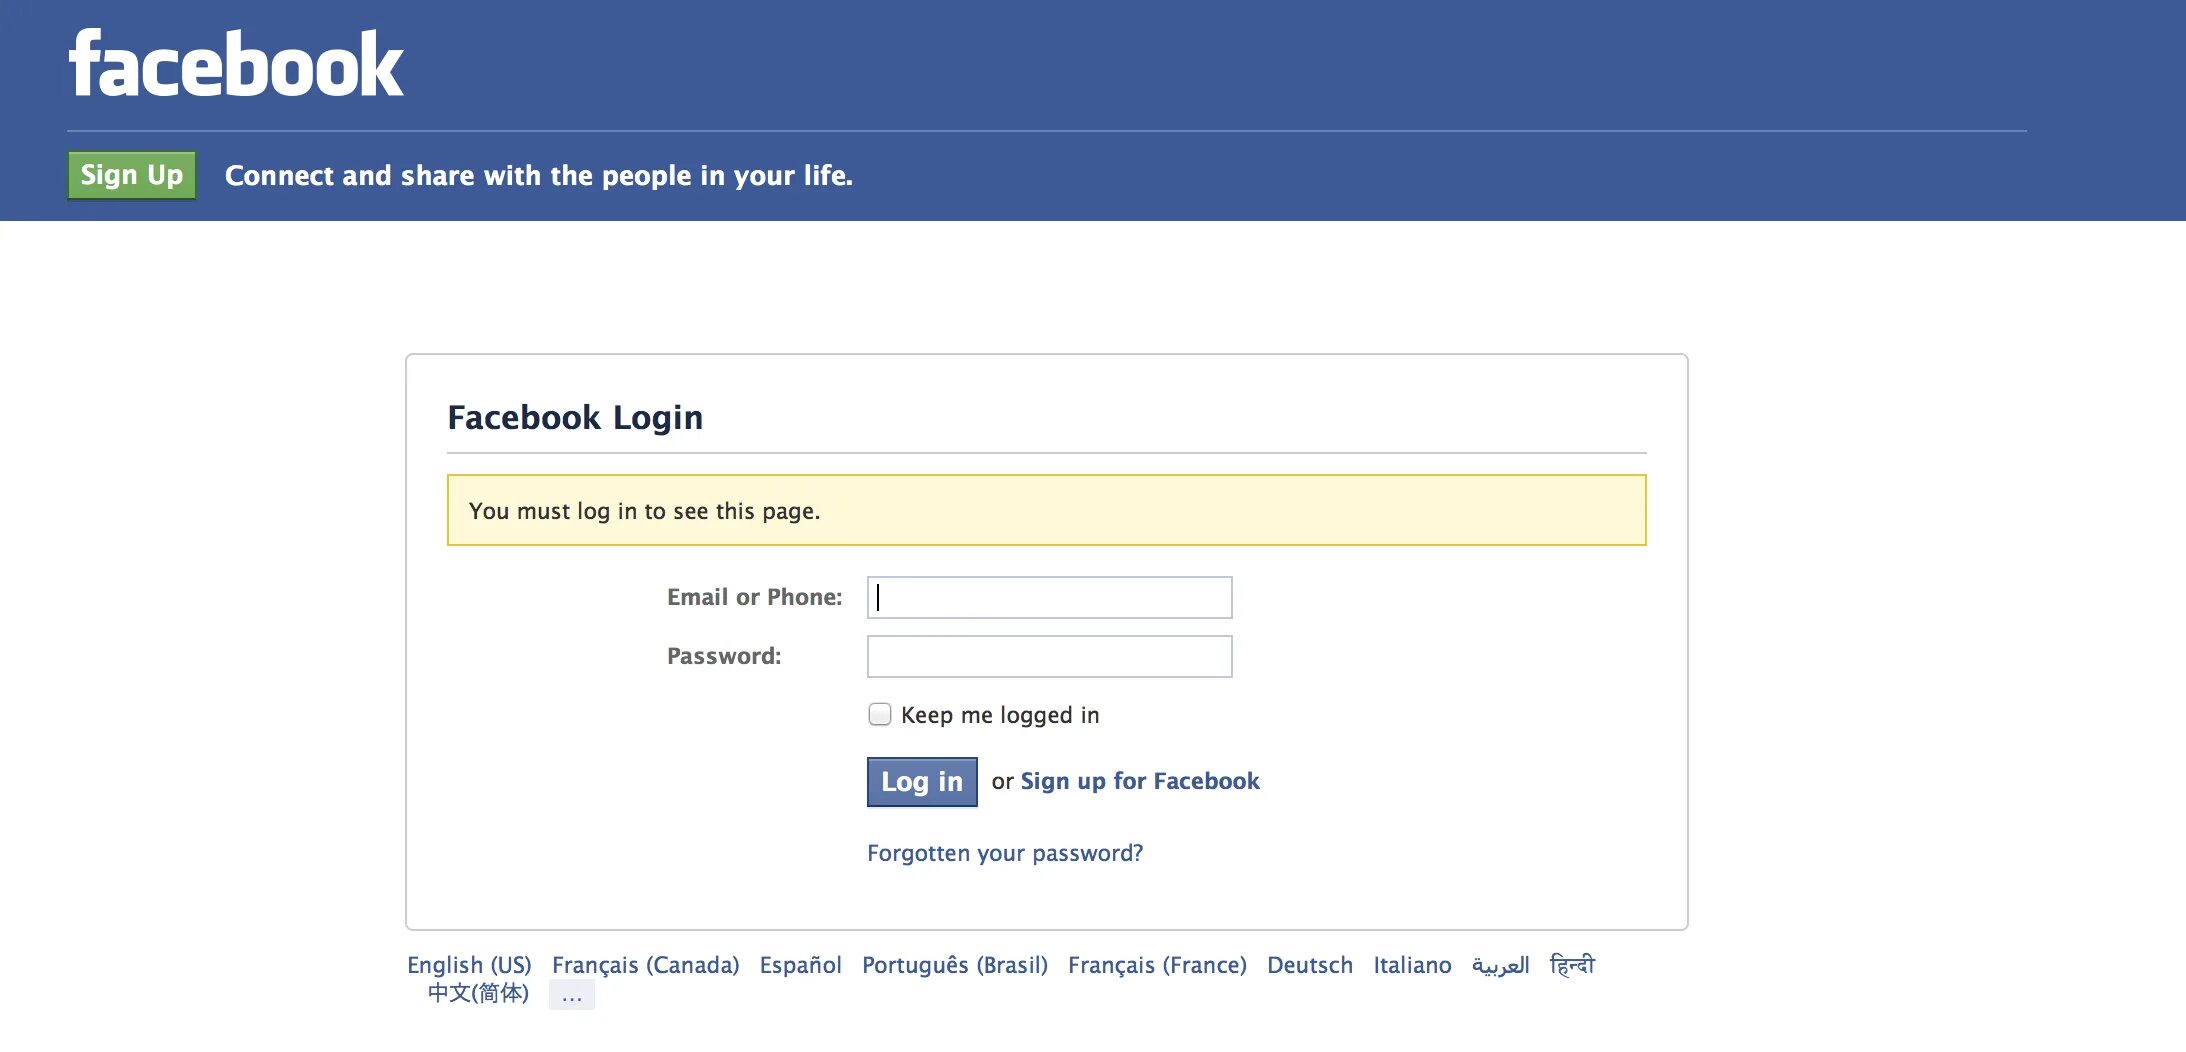 Facebook com dialog oauth. Www.Facebook.com login. Facebook account. Facebook.com Facebook.com. Facebook вход.